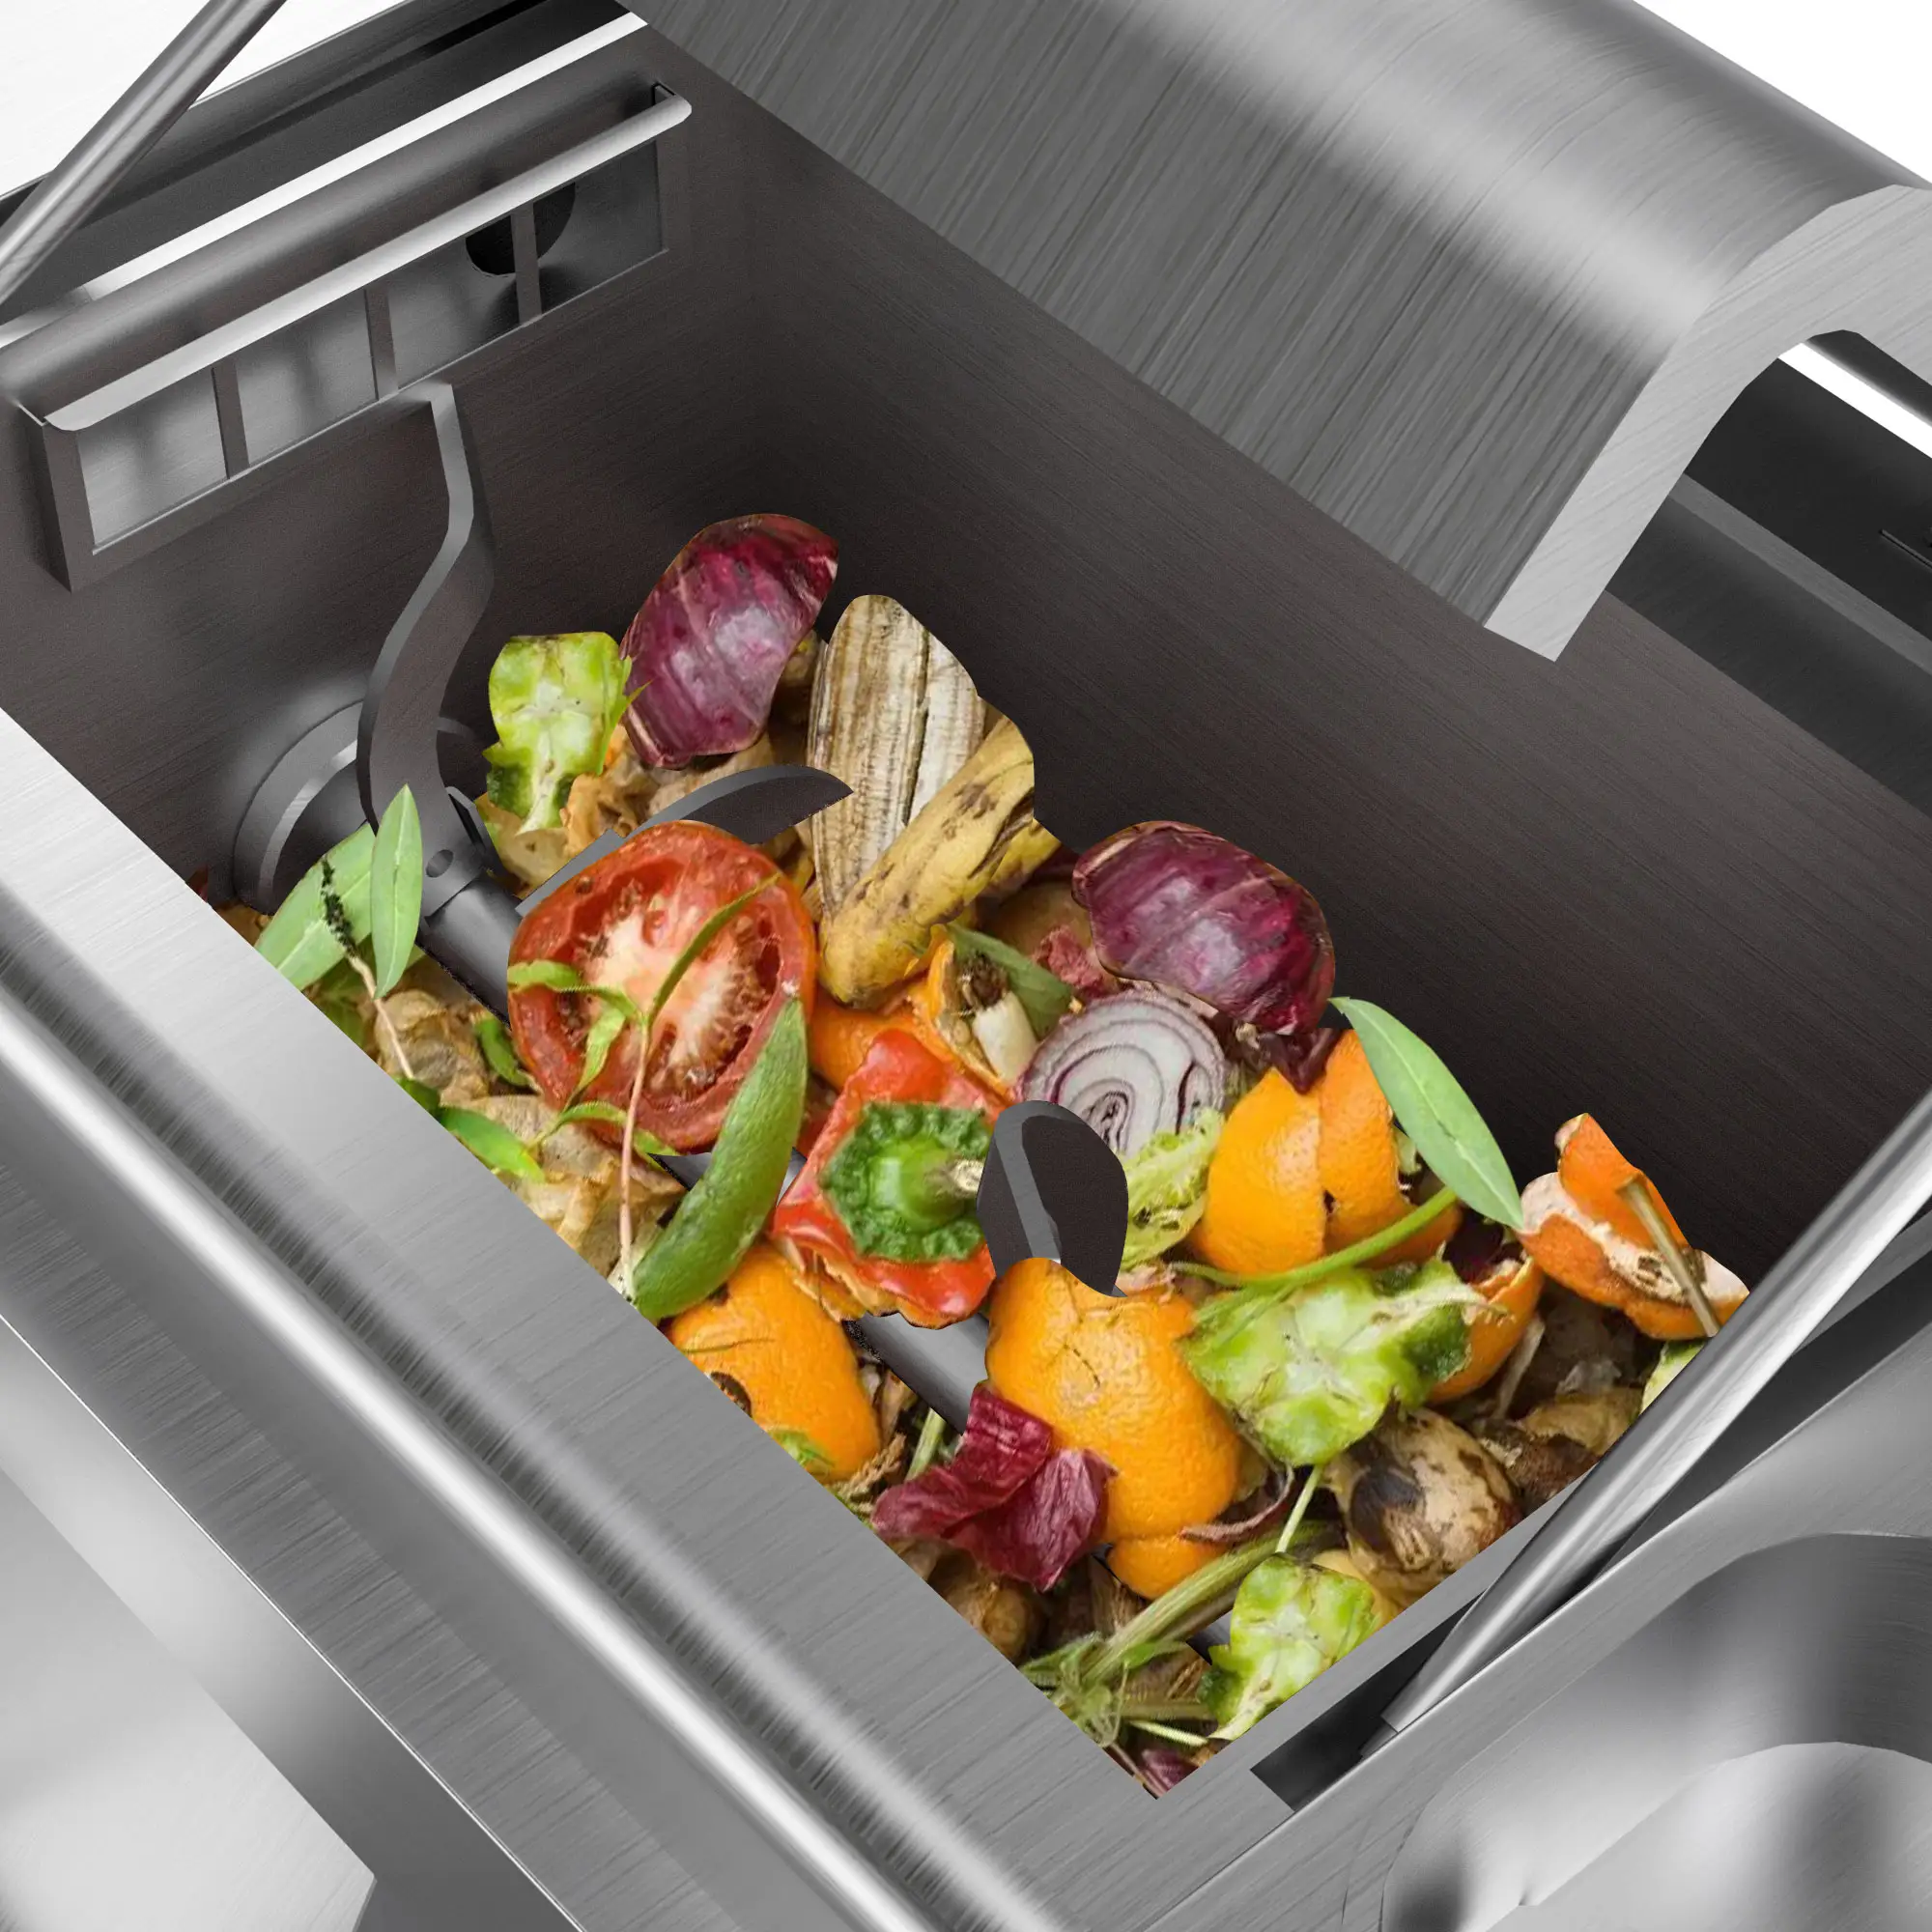 Sunefun 30 кг микроорганизмов, мусороуборочная машина для удаления пищевых отходов